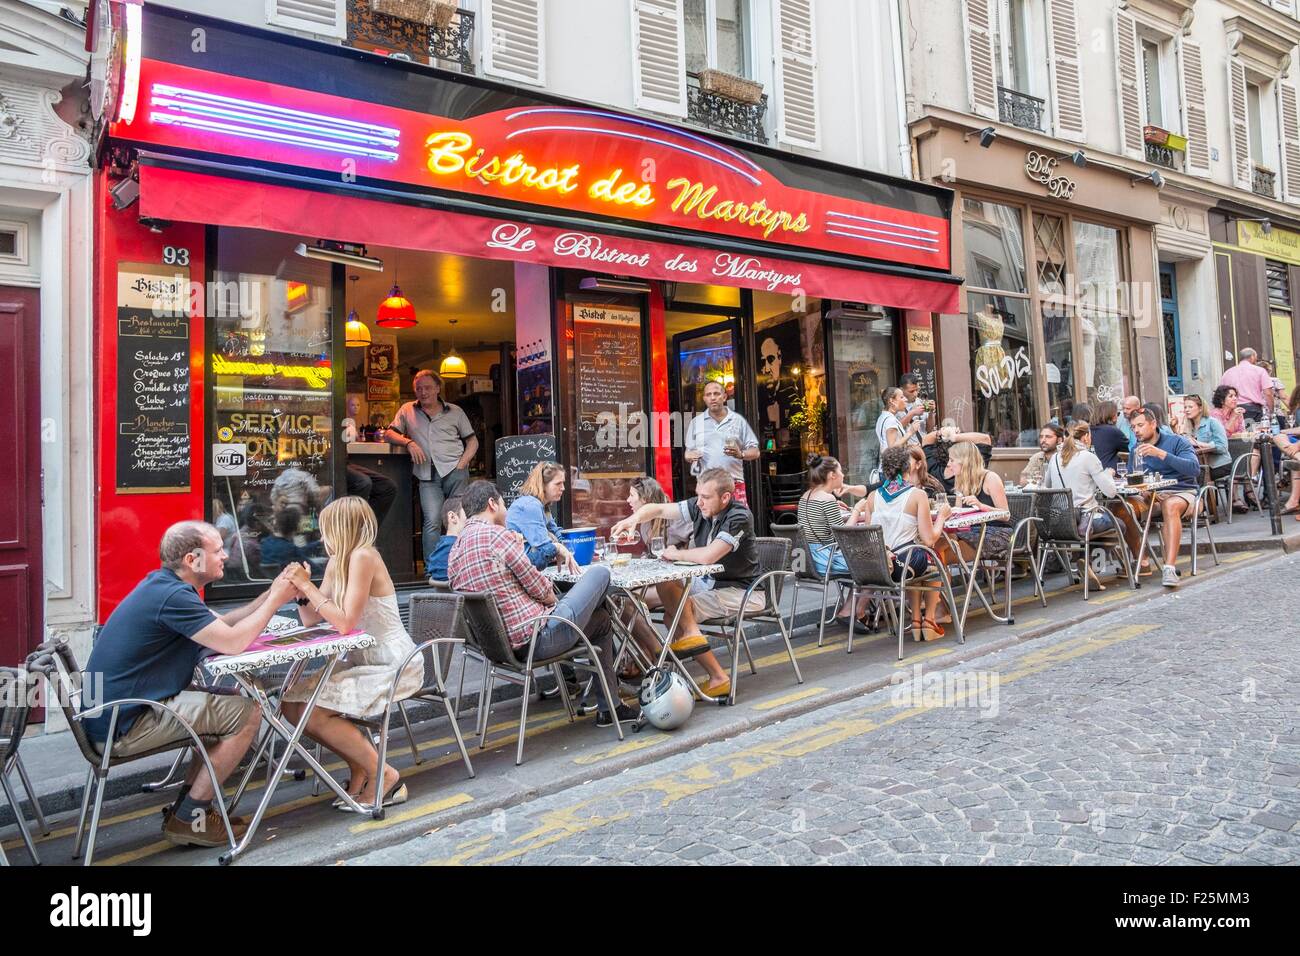 France, Paris, Montmartre, restaurant Bar des Martyrs Stock Photo